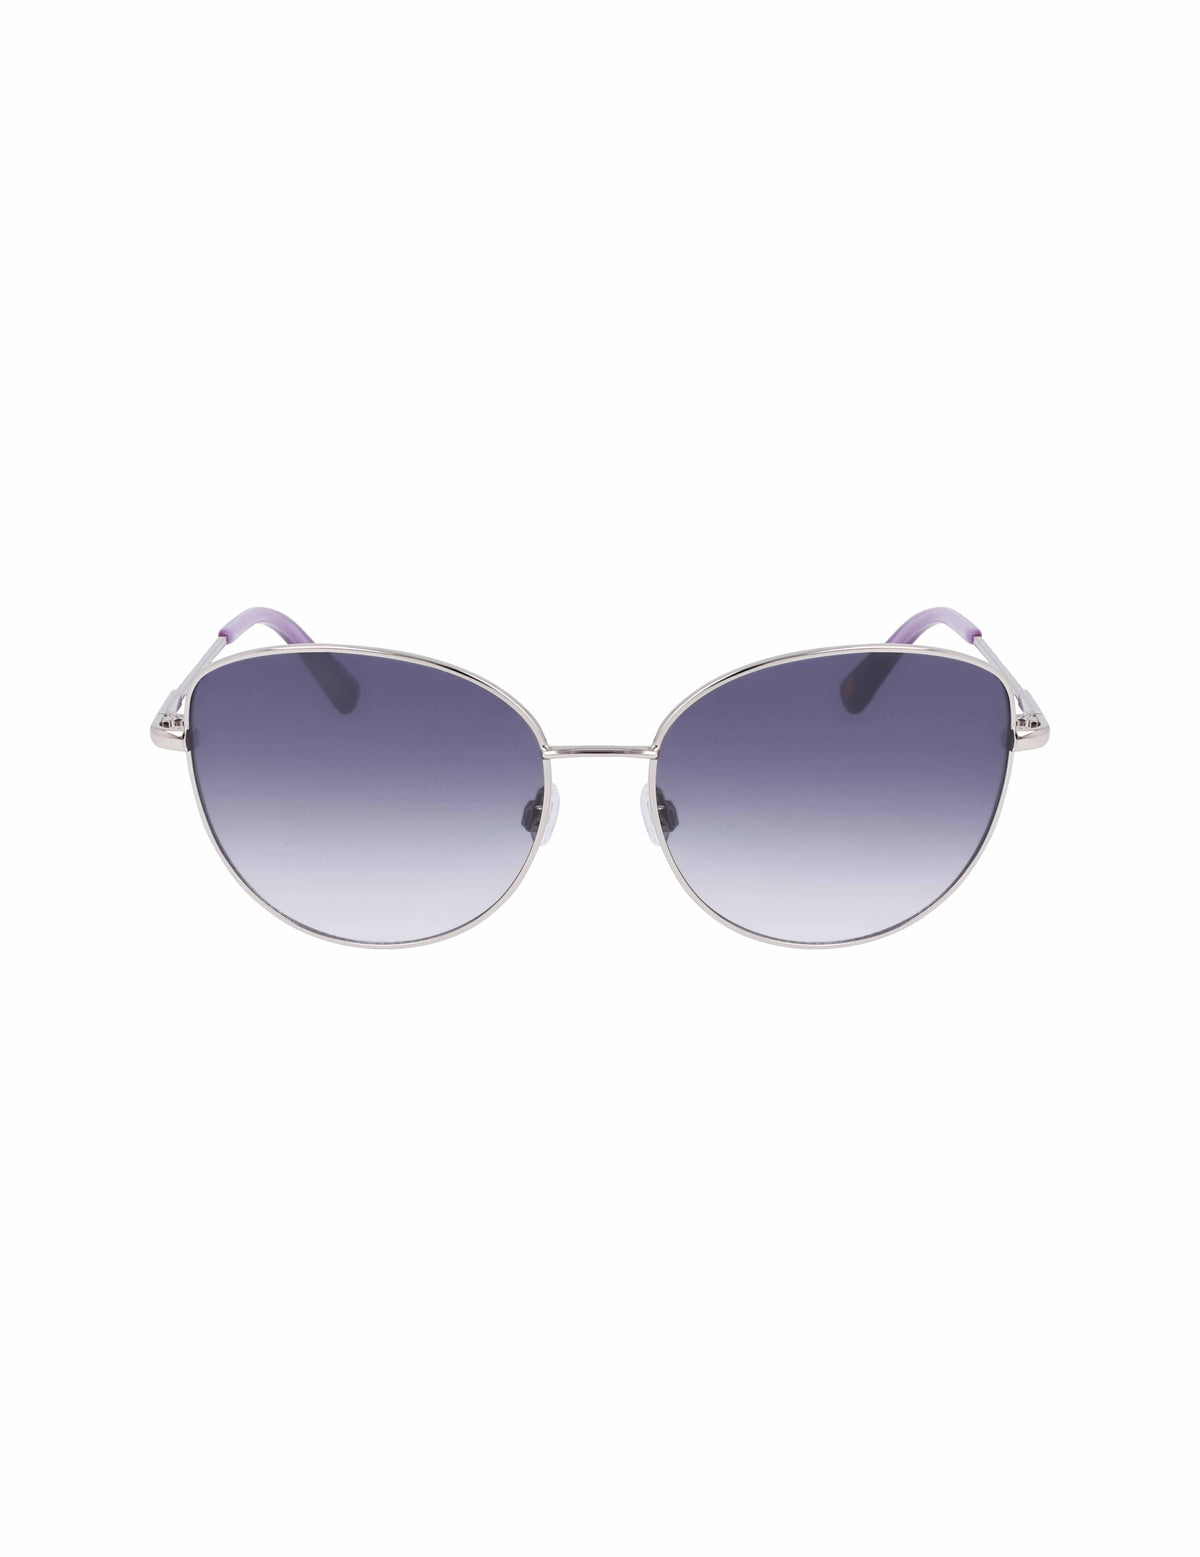 Anne Klein Silver Trendy Round Sunglasses